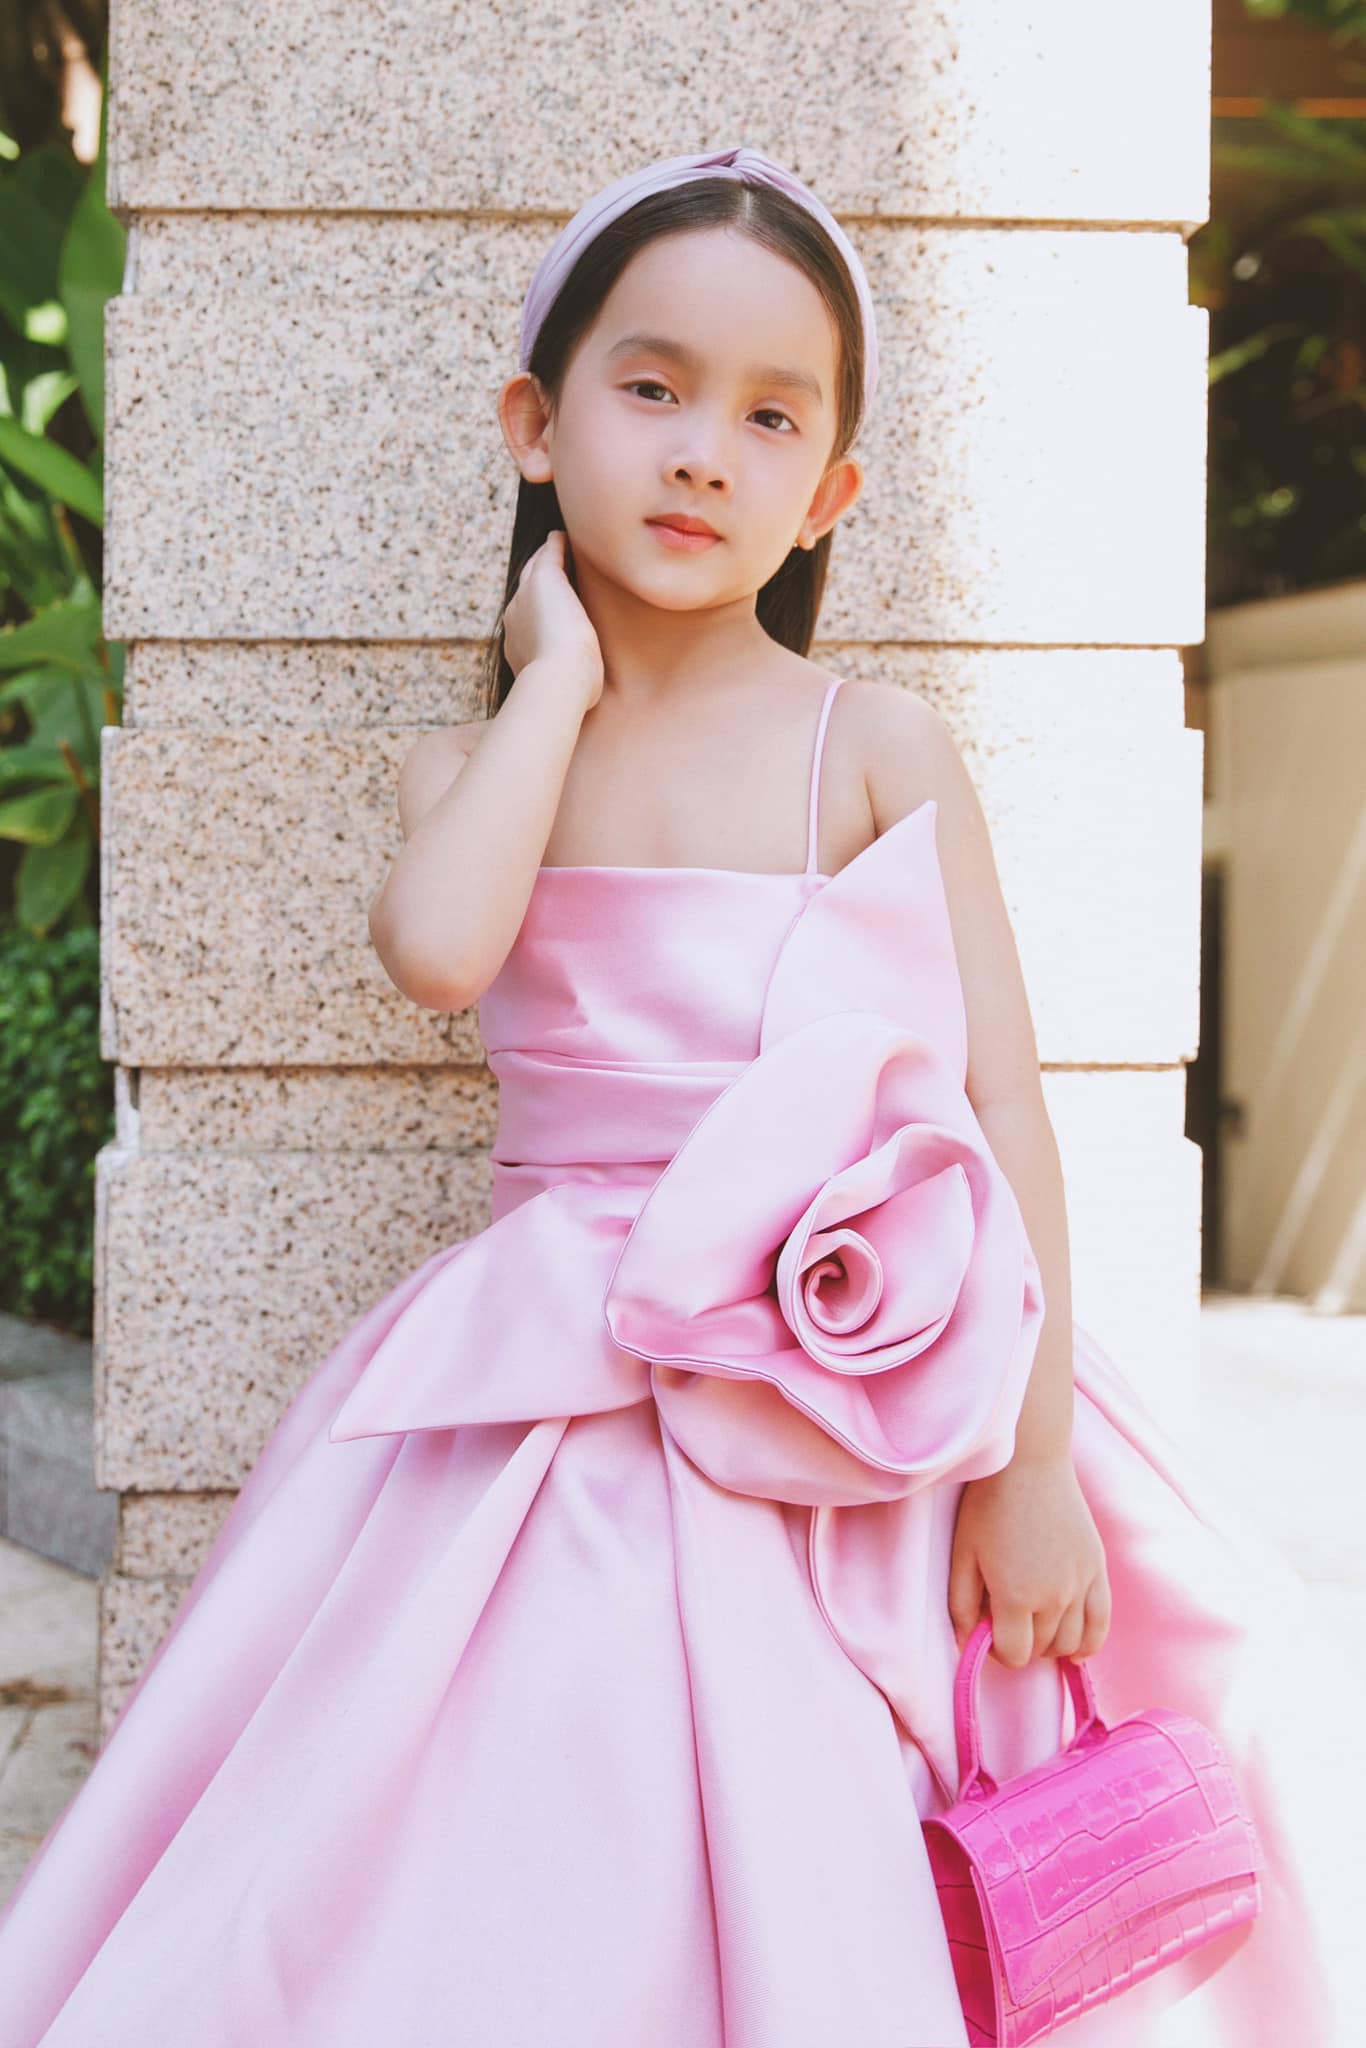 Mới 3 ngày tuổi đã bị bỏ rơi, con gái nuôi của Đỗ Mạnh Cường giờ được khen không khác gì fashionista nhí- Ảnh 7.